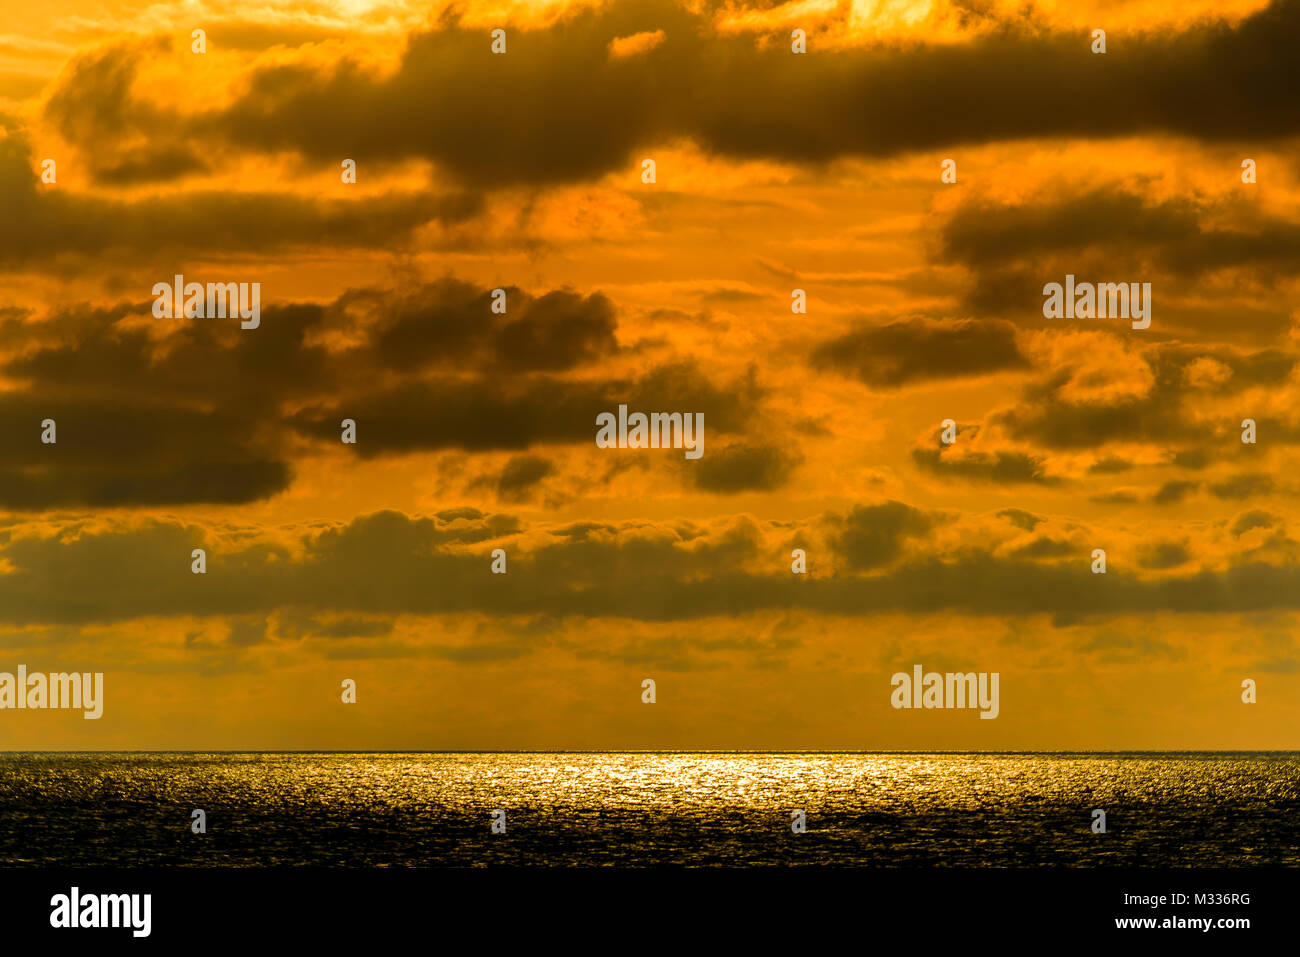 Paysage abstrait stylisé seascape sunset longue exposition avec des nuages sous différentes nuances de bleu, orange, jaune et rouge Banque D'Images